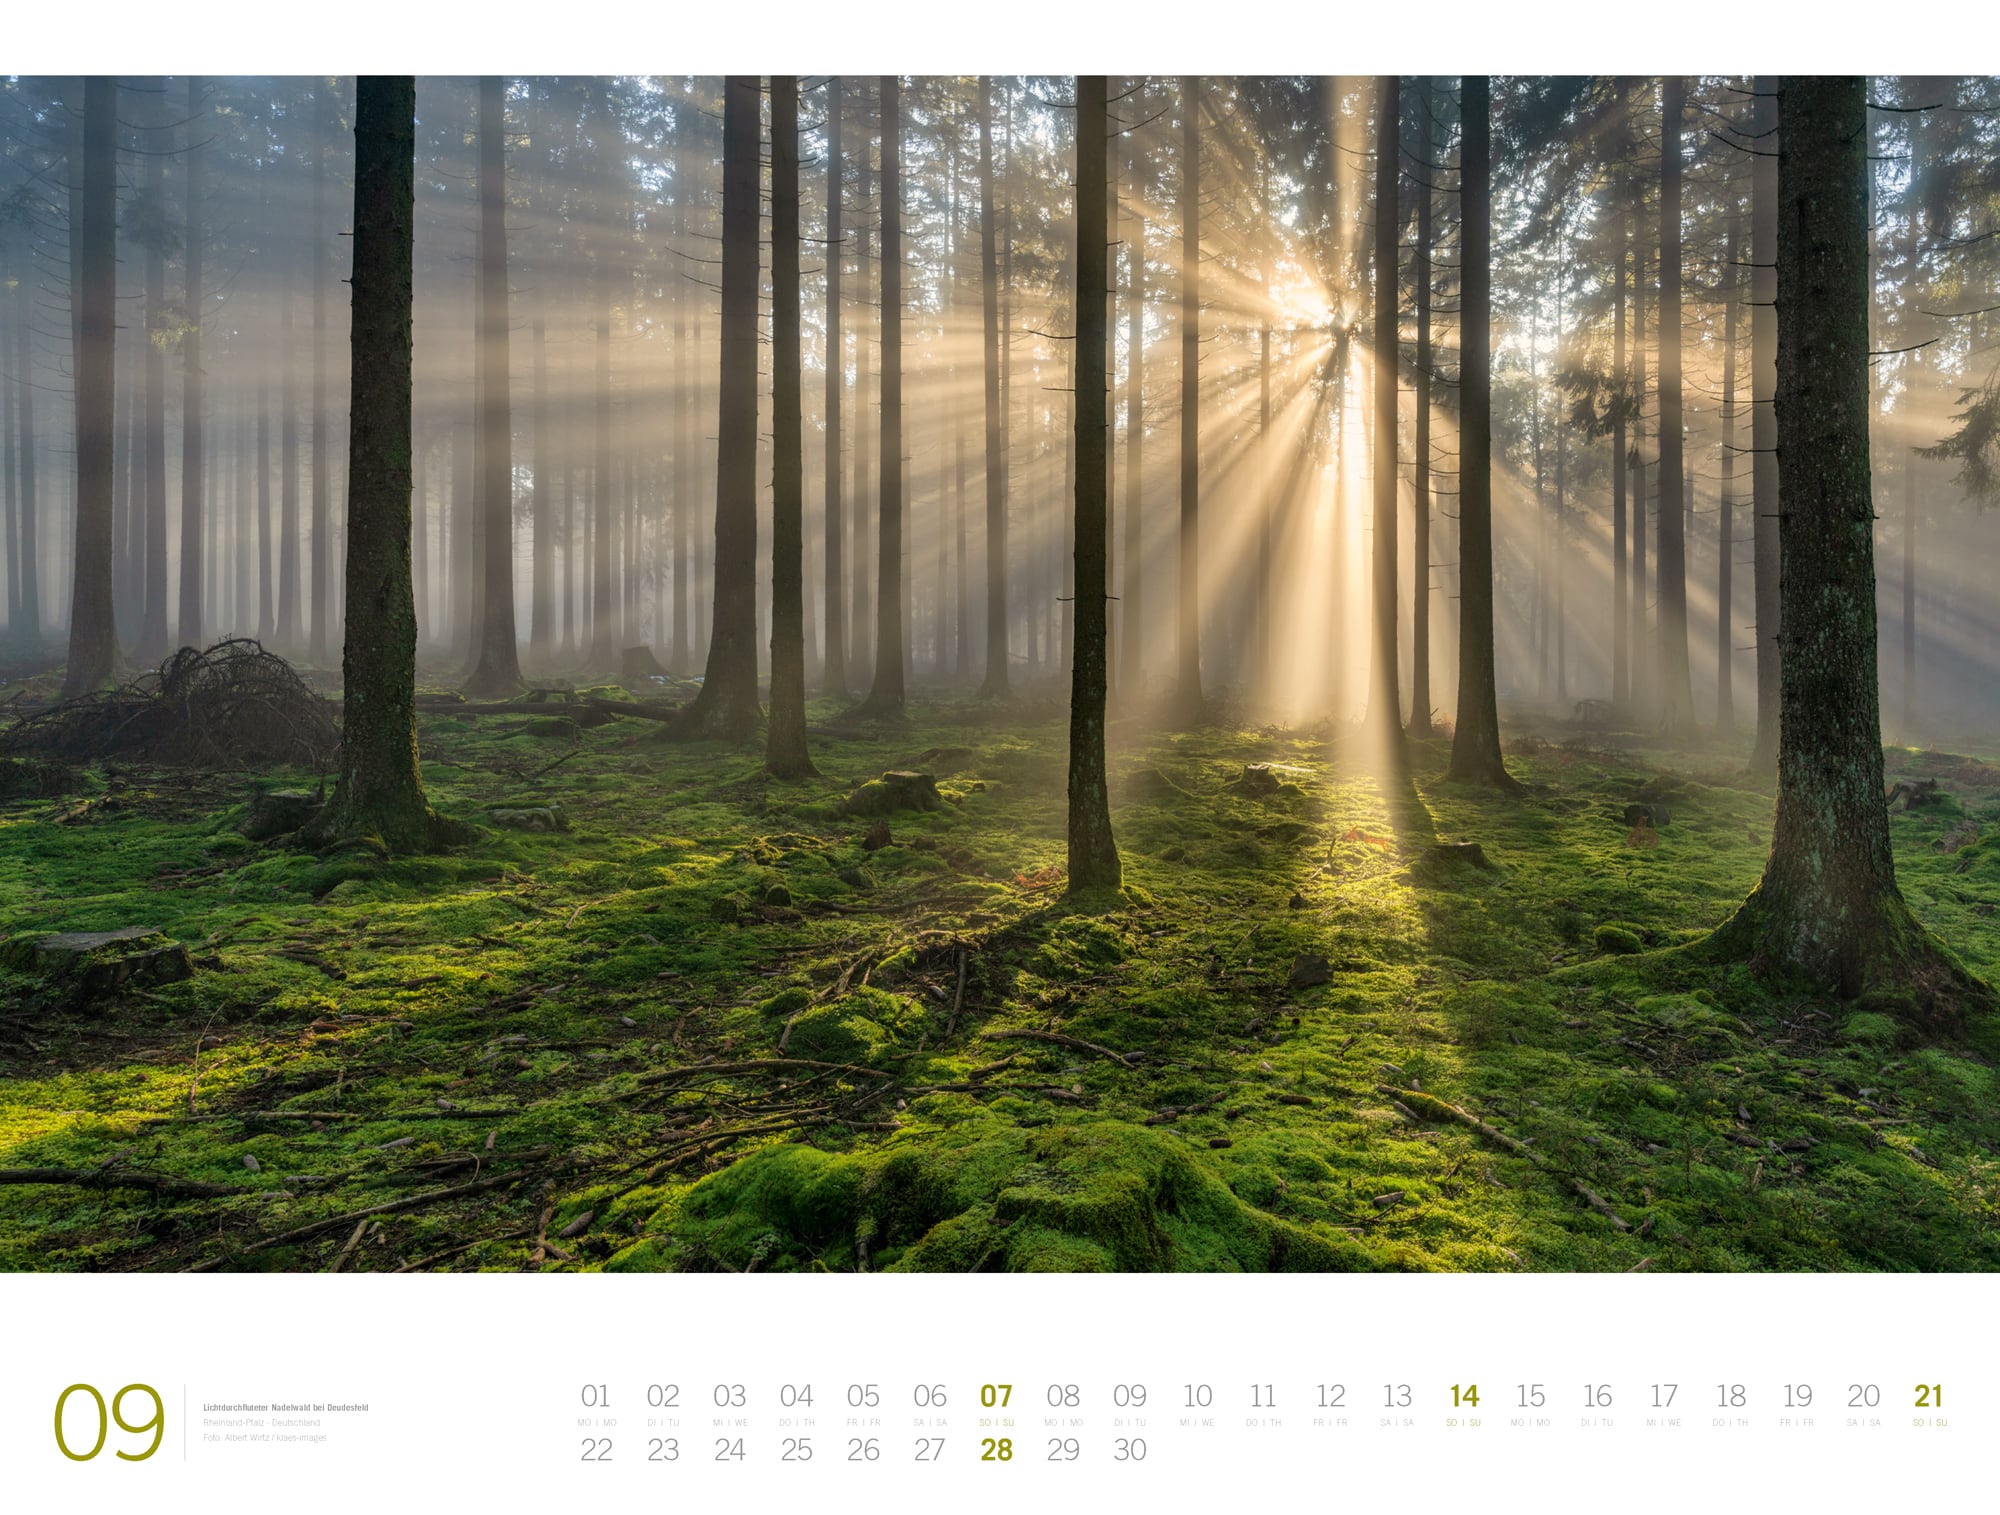 Ackermann Calendar Forest - Gallery 2025 - Inside View 09